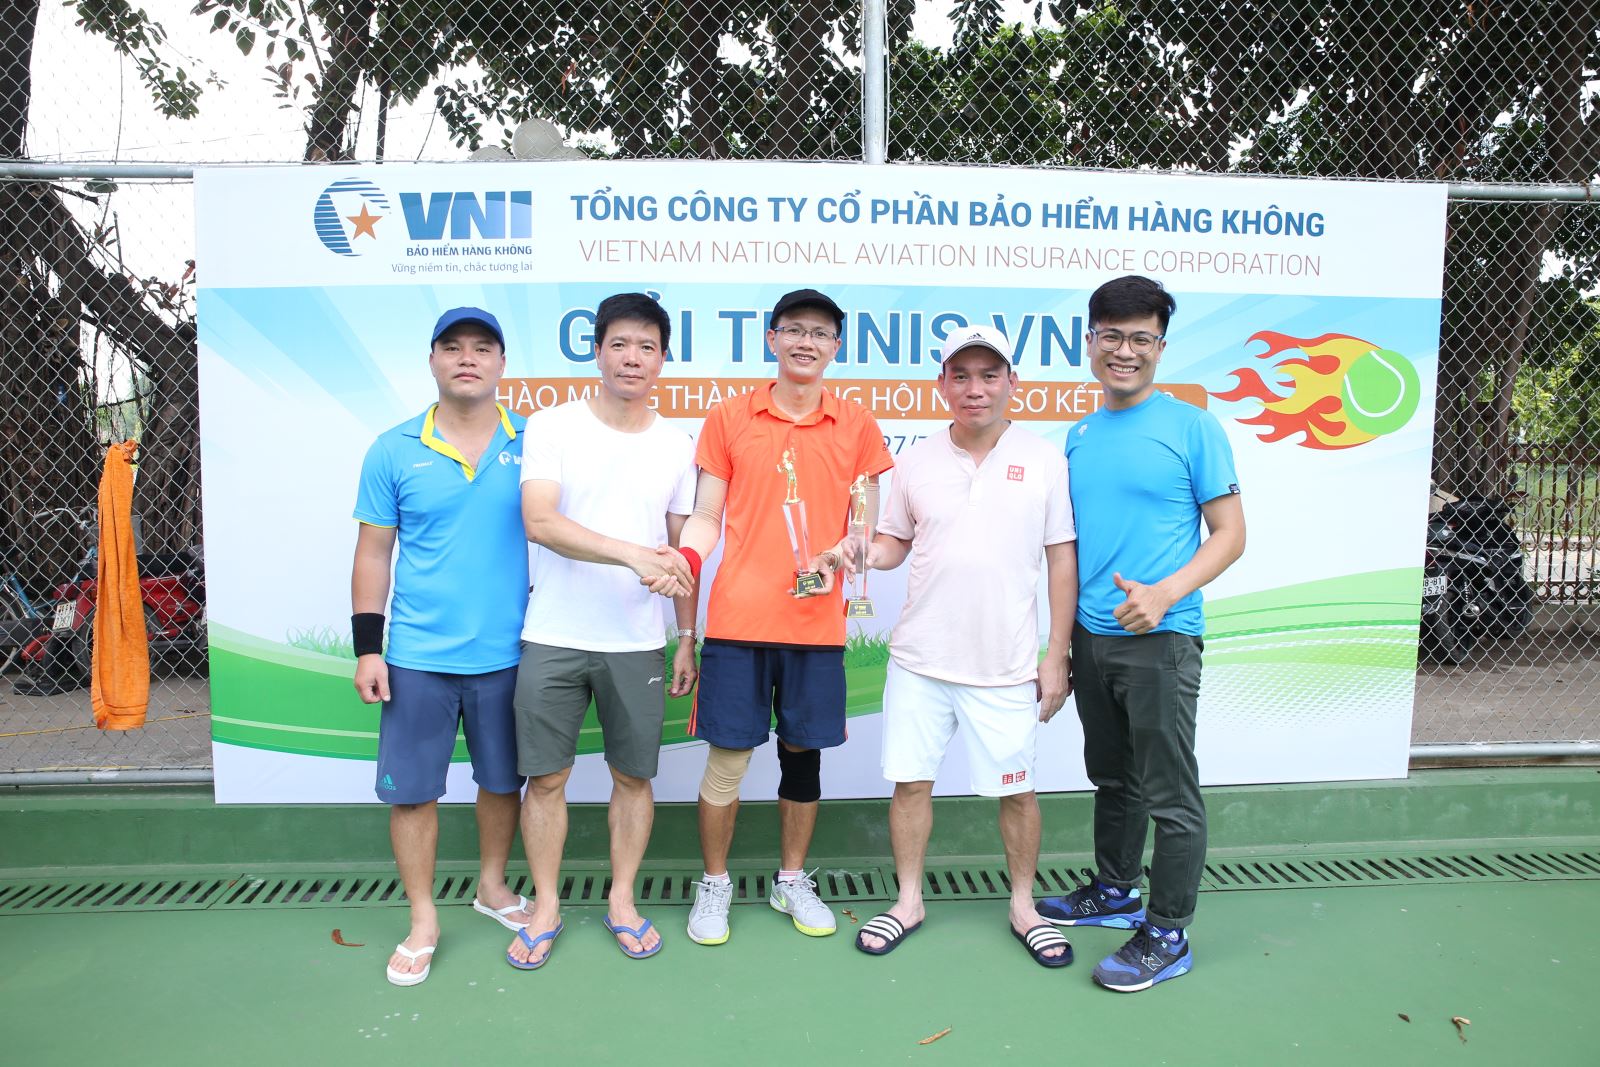 Giải tennis VNI chào mừng thành công Hội nghị sơ kết 2019